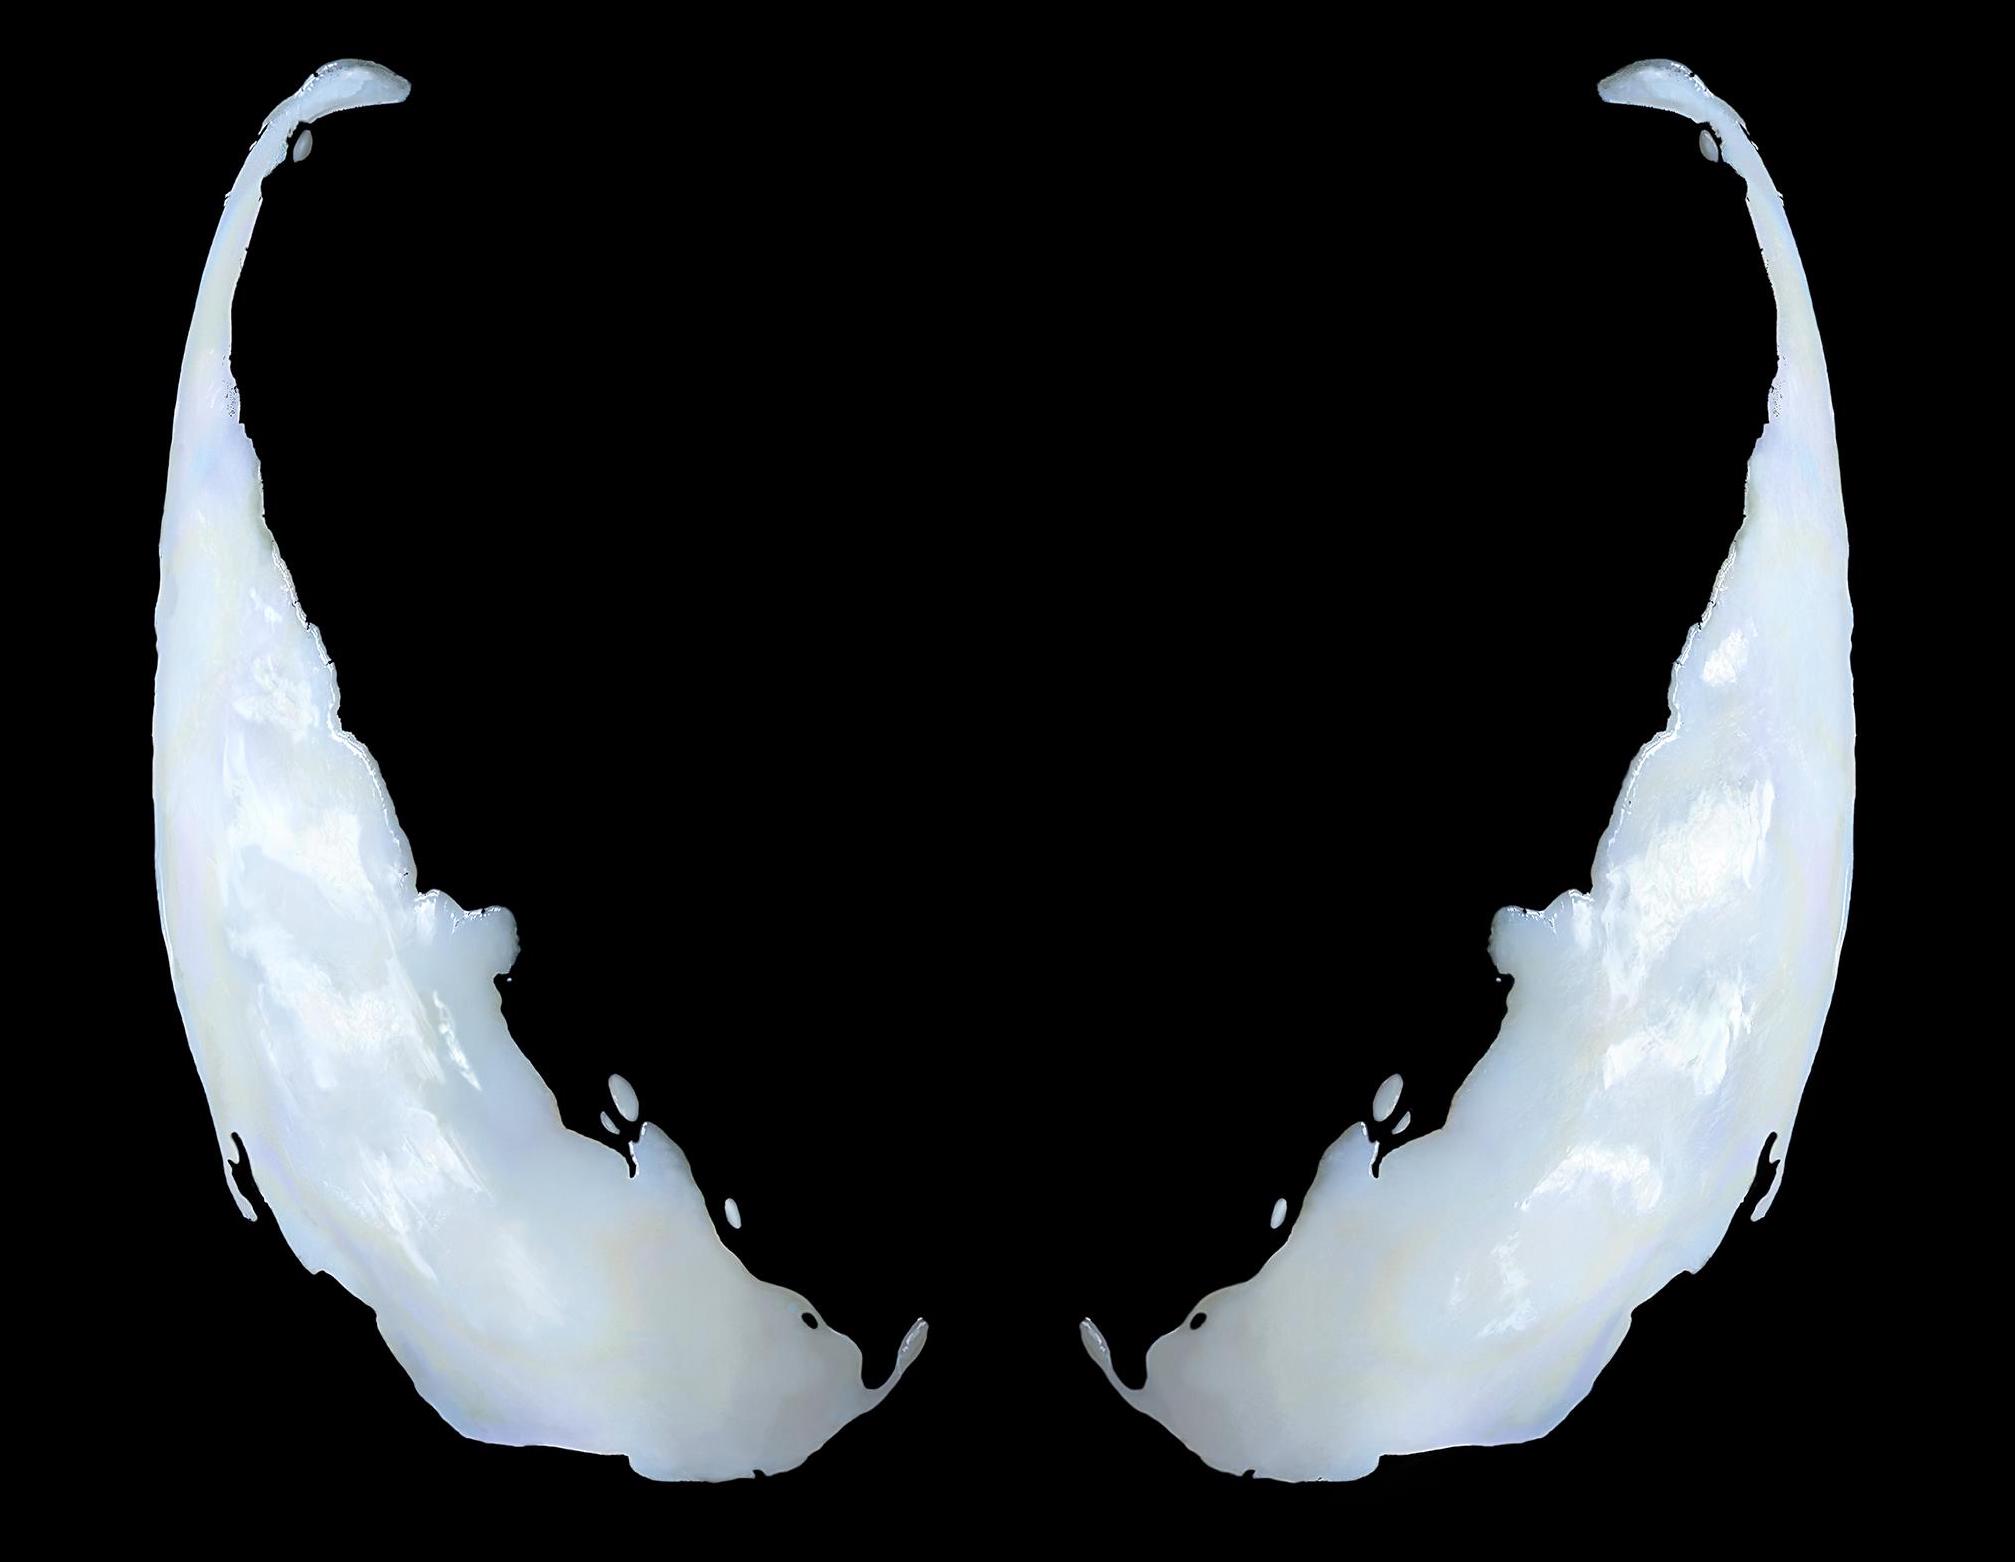 Venom: finalmente il teaser poster